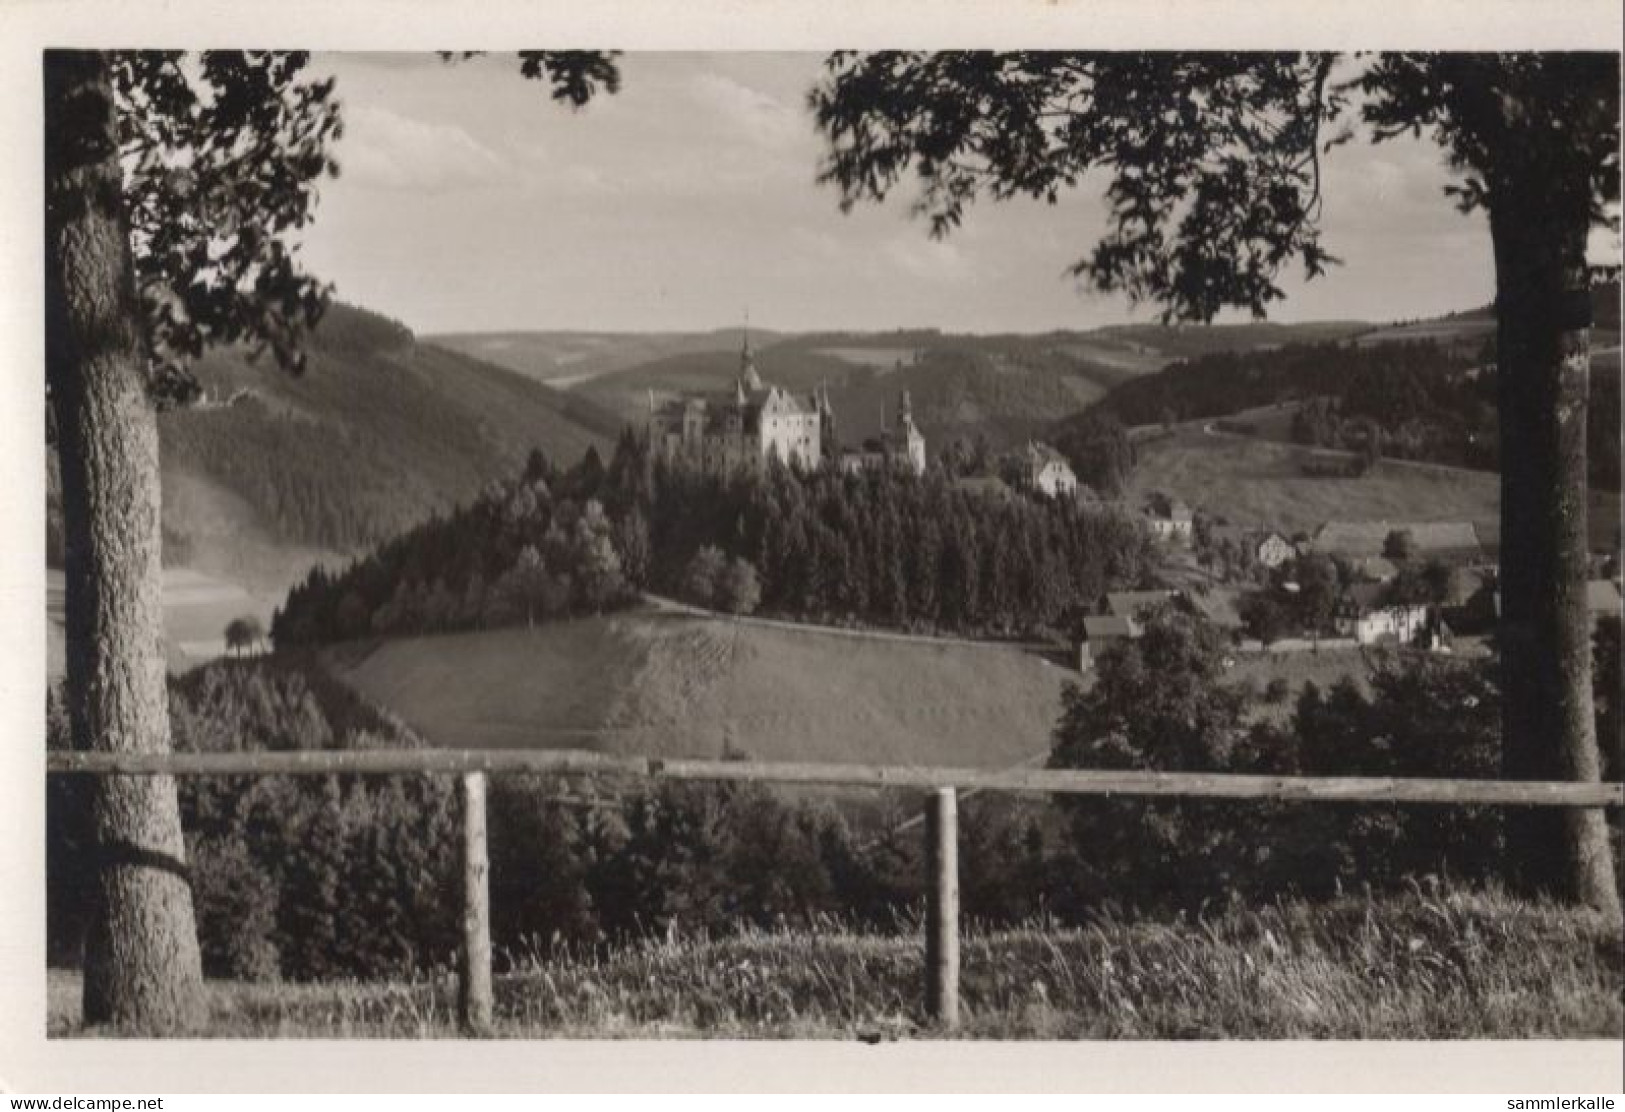 124259 - Ludwigsstadt-Lauenstein, Burg Lauenstein - Aus Der Ferne - Kronach